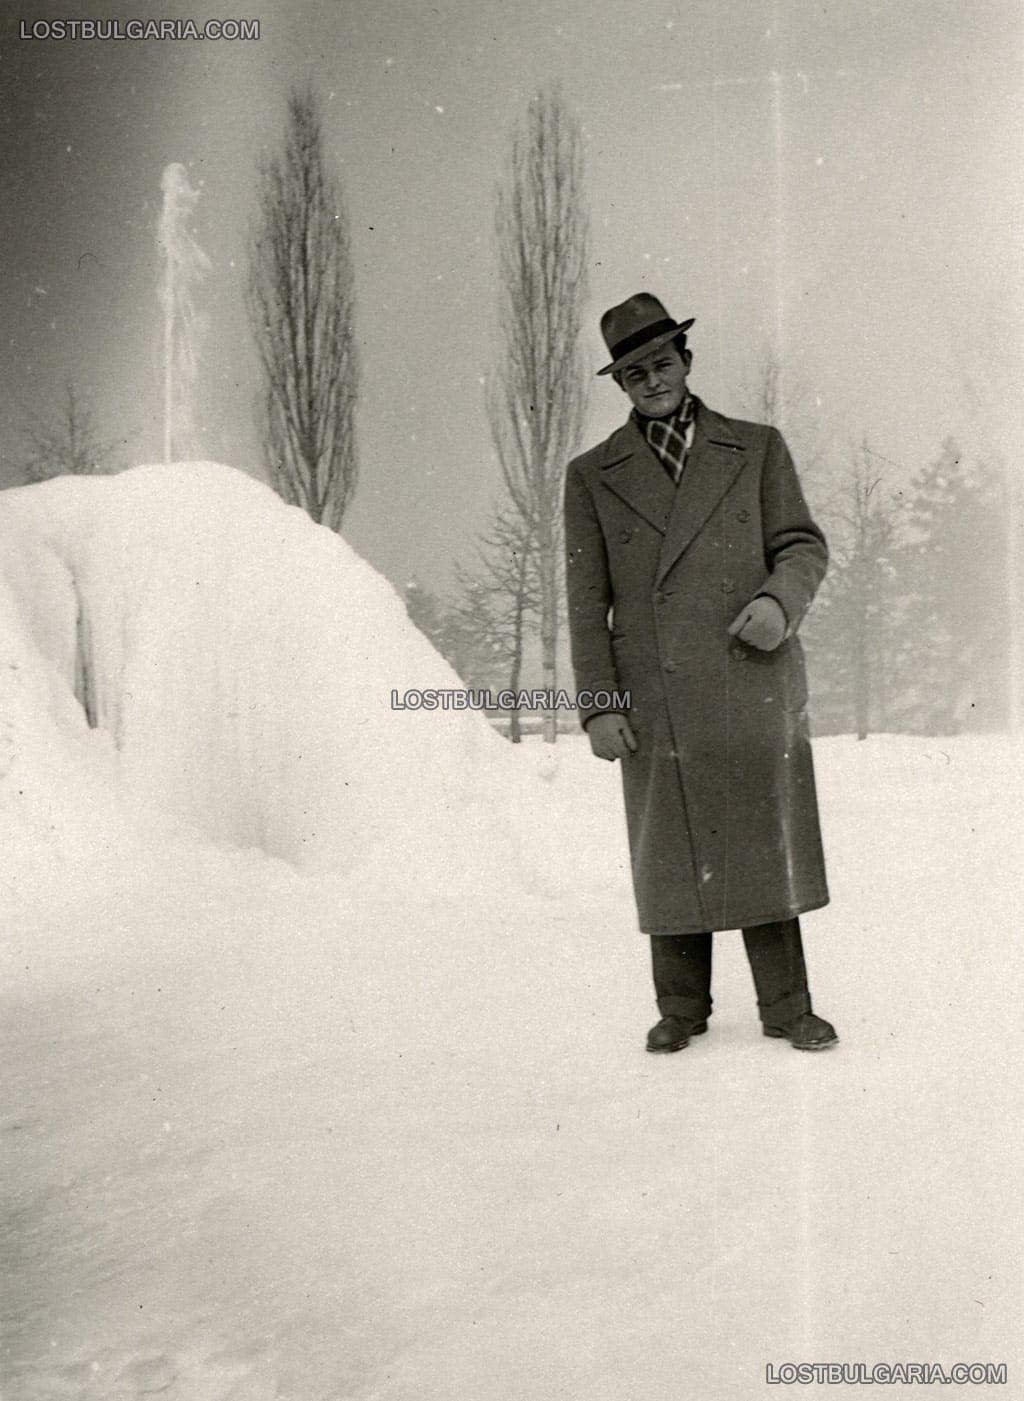 Снимка за спомен на елегантно облечен млад мъж в Борисовата градина през зимата, София 1936 г.